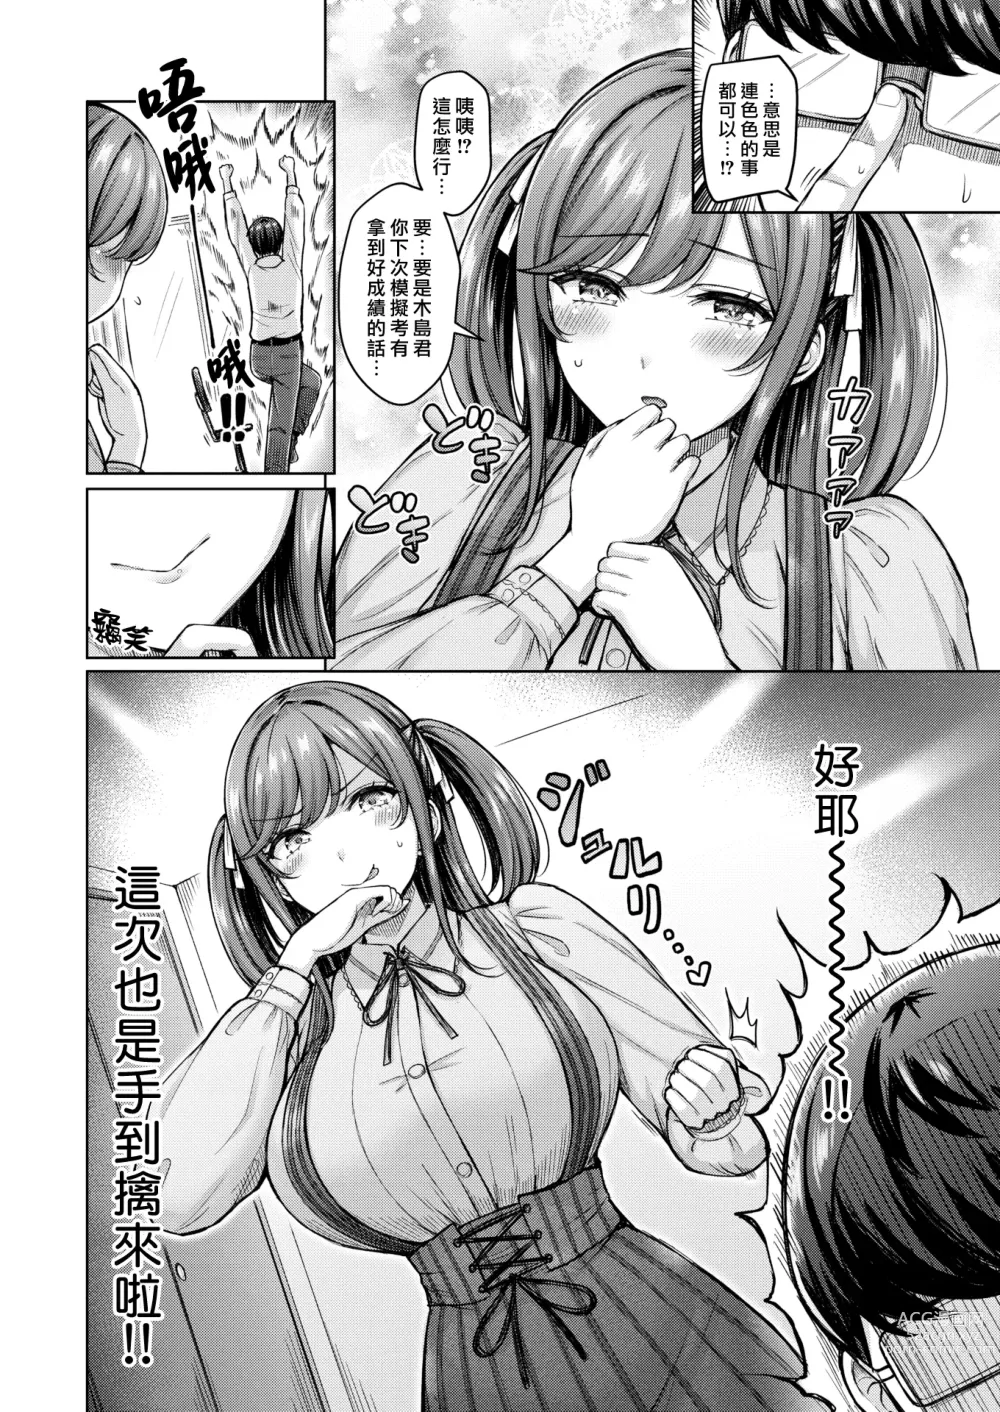 Page 2 of manga 一切都是託百瀨老師的福!